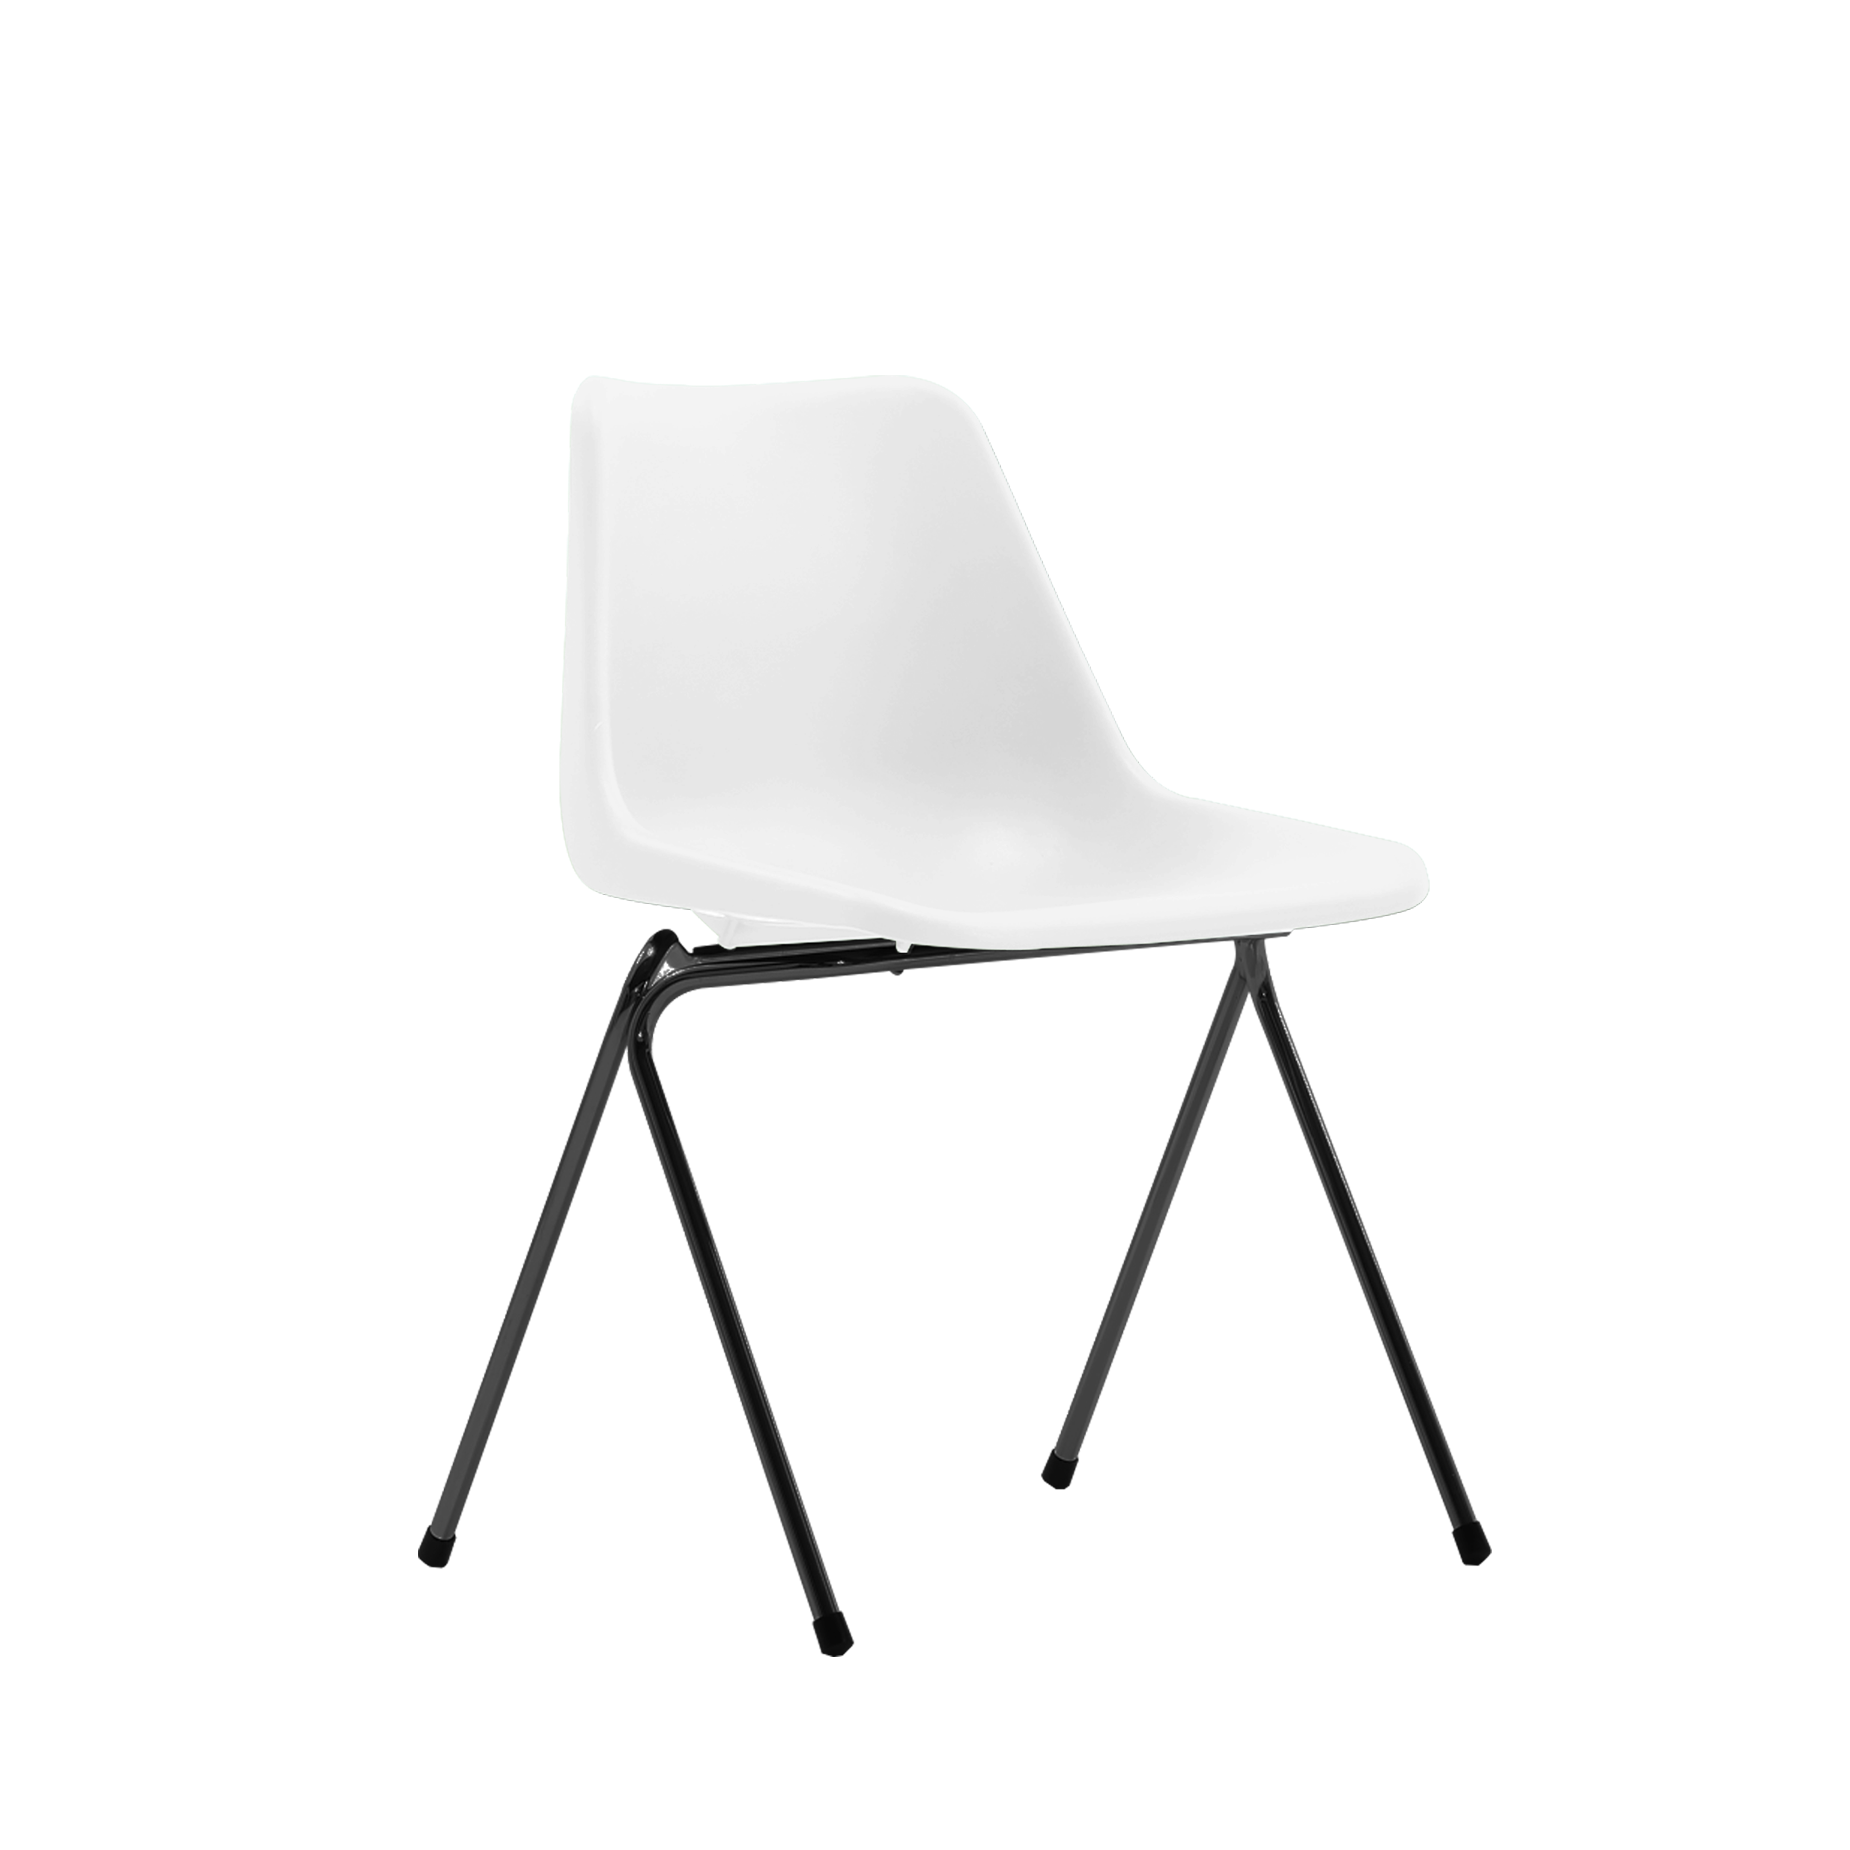 (주)도이치영국 20세기 대표 디자이너, 로빈데이 한국 마케팅사_도이치     [BRITISHER] POLYPROP chair by Robinday, 1963 / black leg  [ 세계 최초 폴리프로필렌(플라스틱) 체어 ]